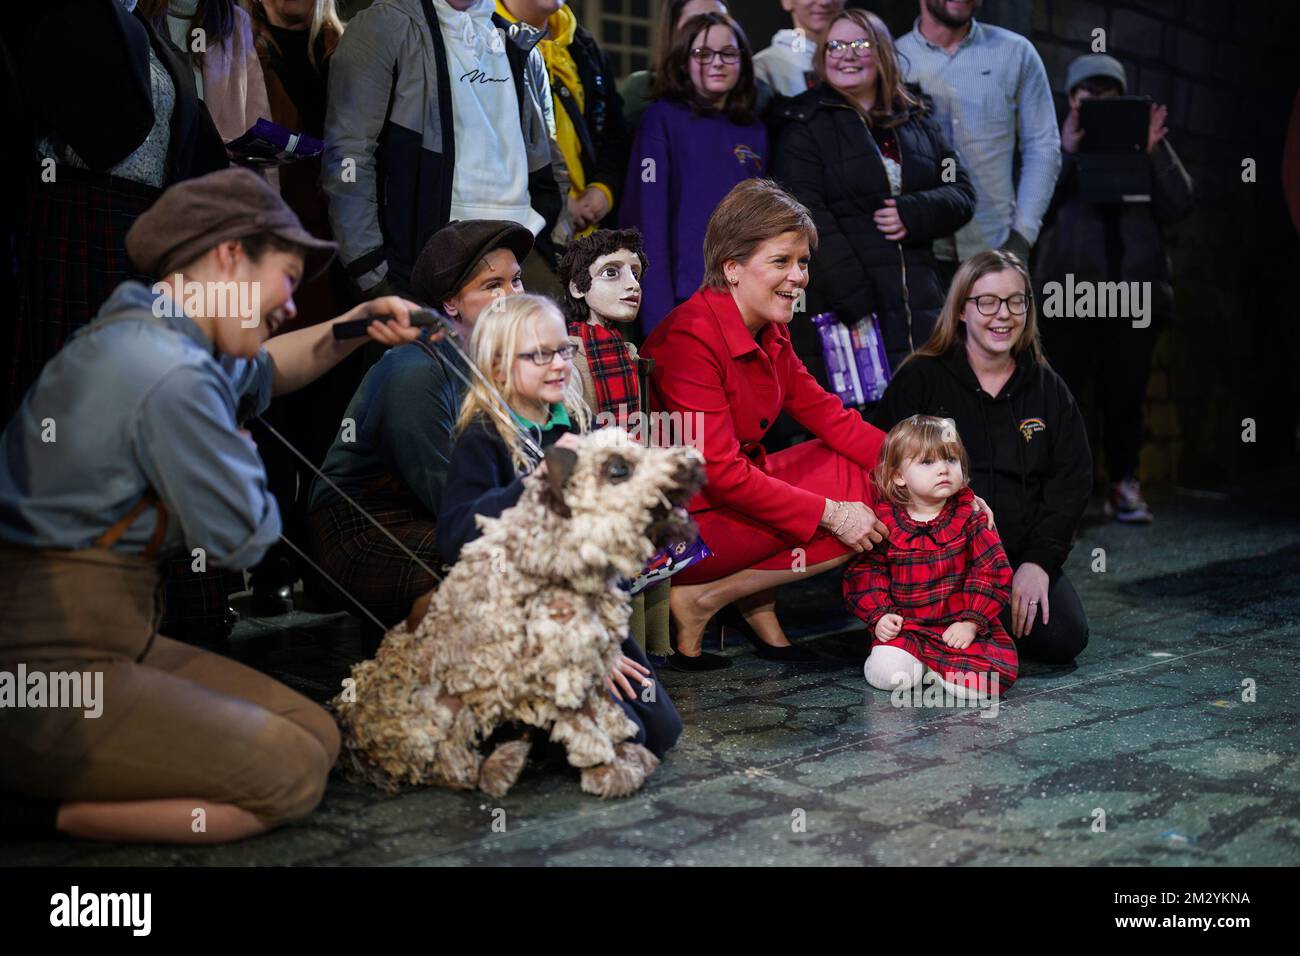 Die erste schottische Ministerin Nicola Sturgeon trifft Kinder und besetzt Mitglieder, während sie mit erfahrenen jungen Menschen zu einer Weihnachtsvorstellung in Edinburgh im Lyceum Theatre in Edinburgh kommt. Bilddatum: Mittwoch, 14. Dezember 2022. Stockfoto